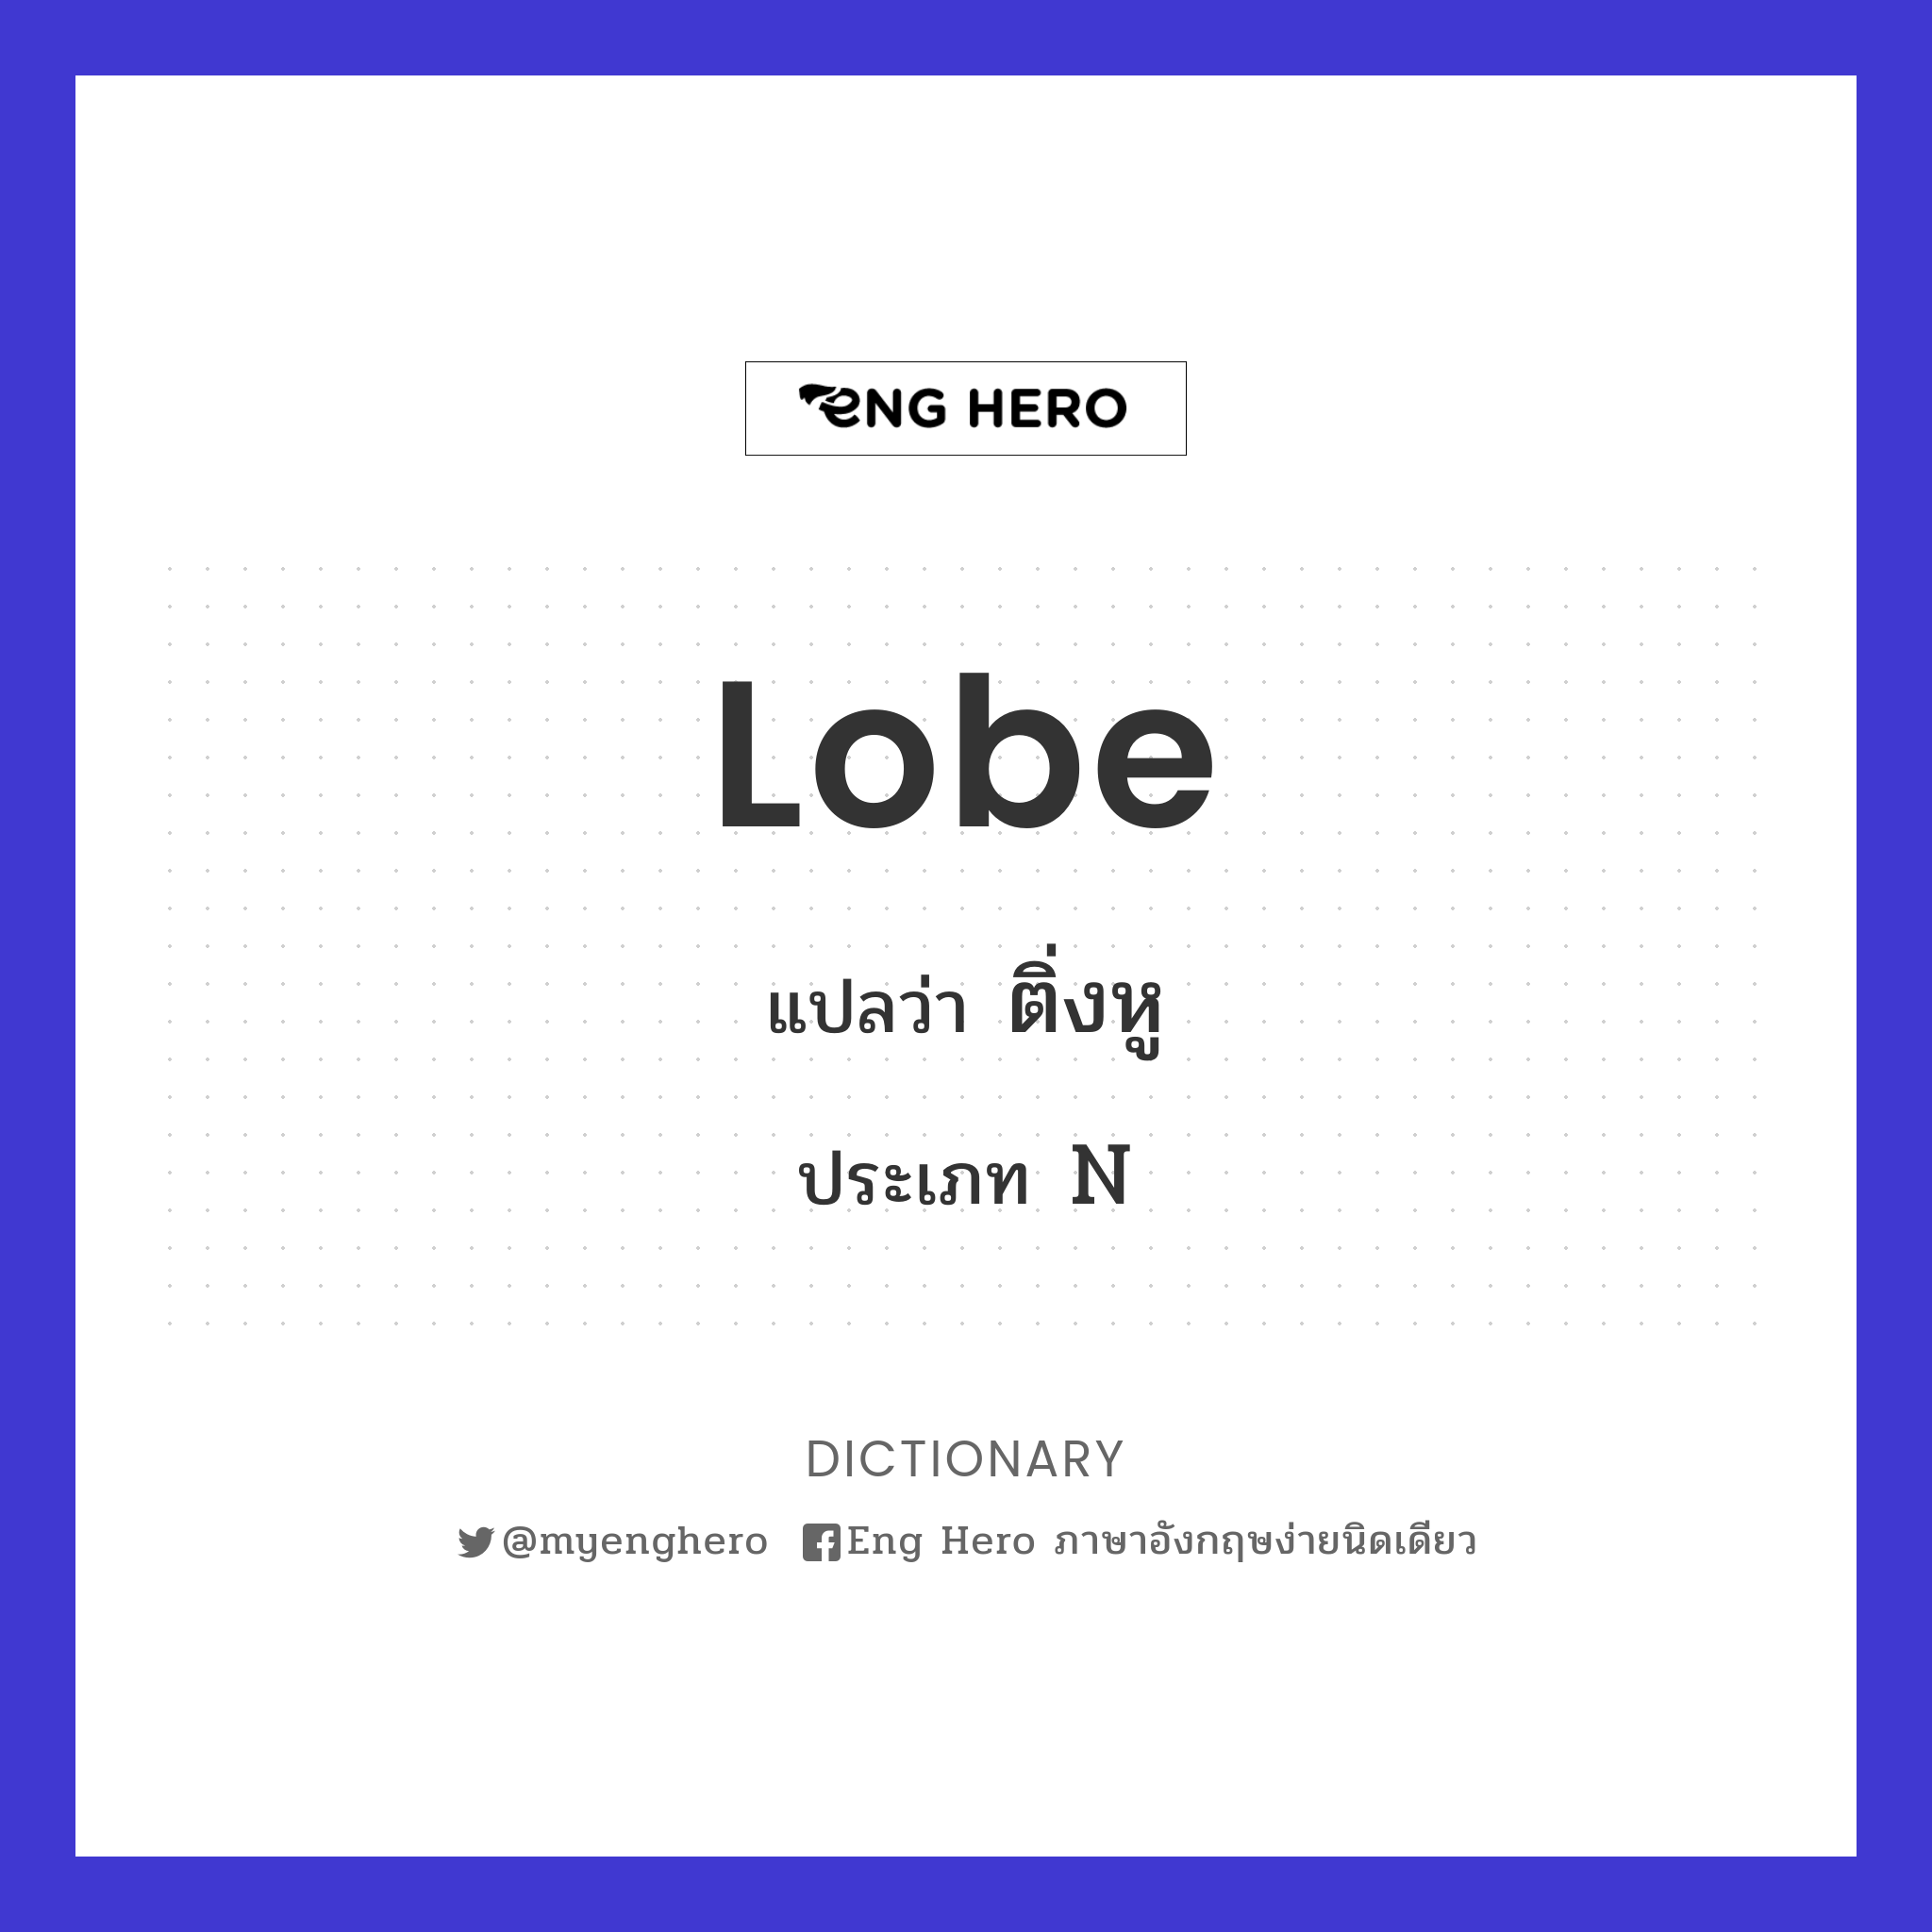 lobe